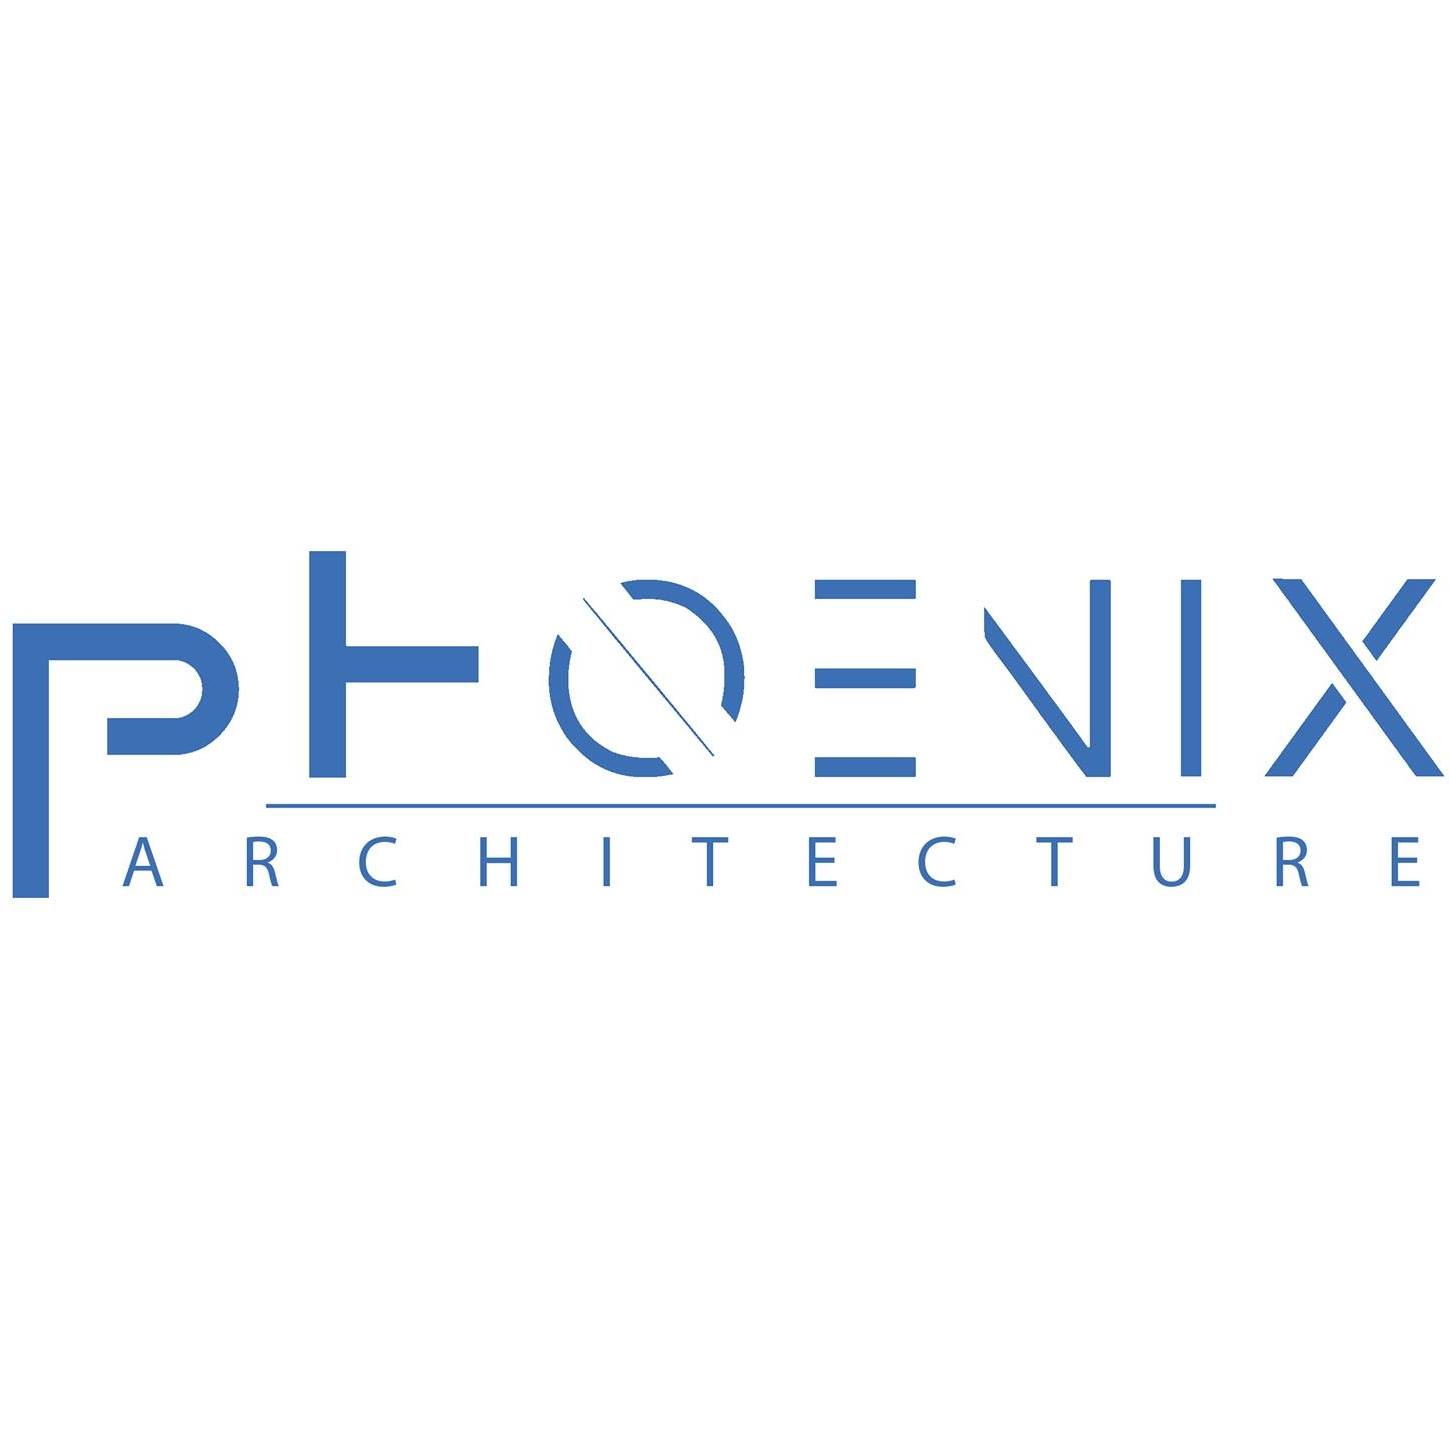 PHOENIX ARCHITECTURE|Legal Services|Professional Services